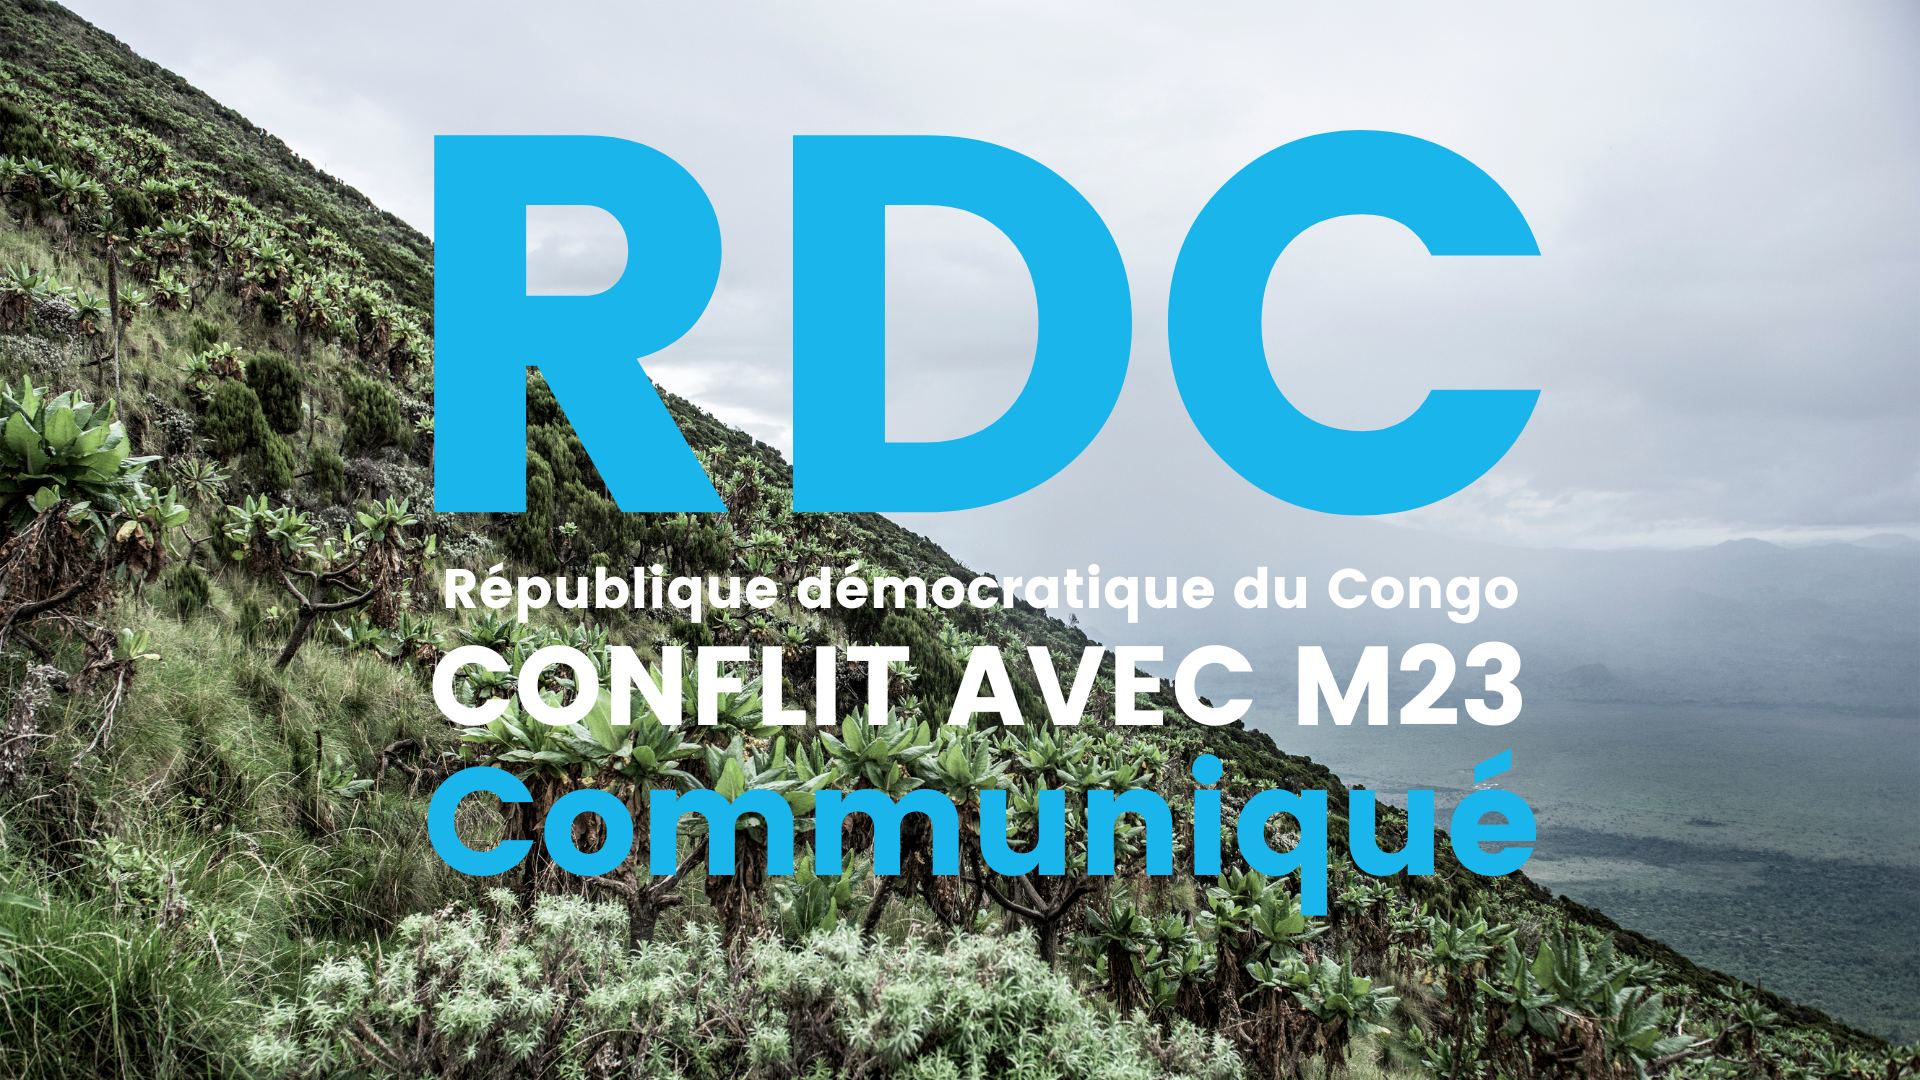 Communiqué de WECF sur le conflit avec le groupe rebelle M23 en République démocratique Congo